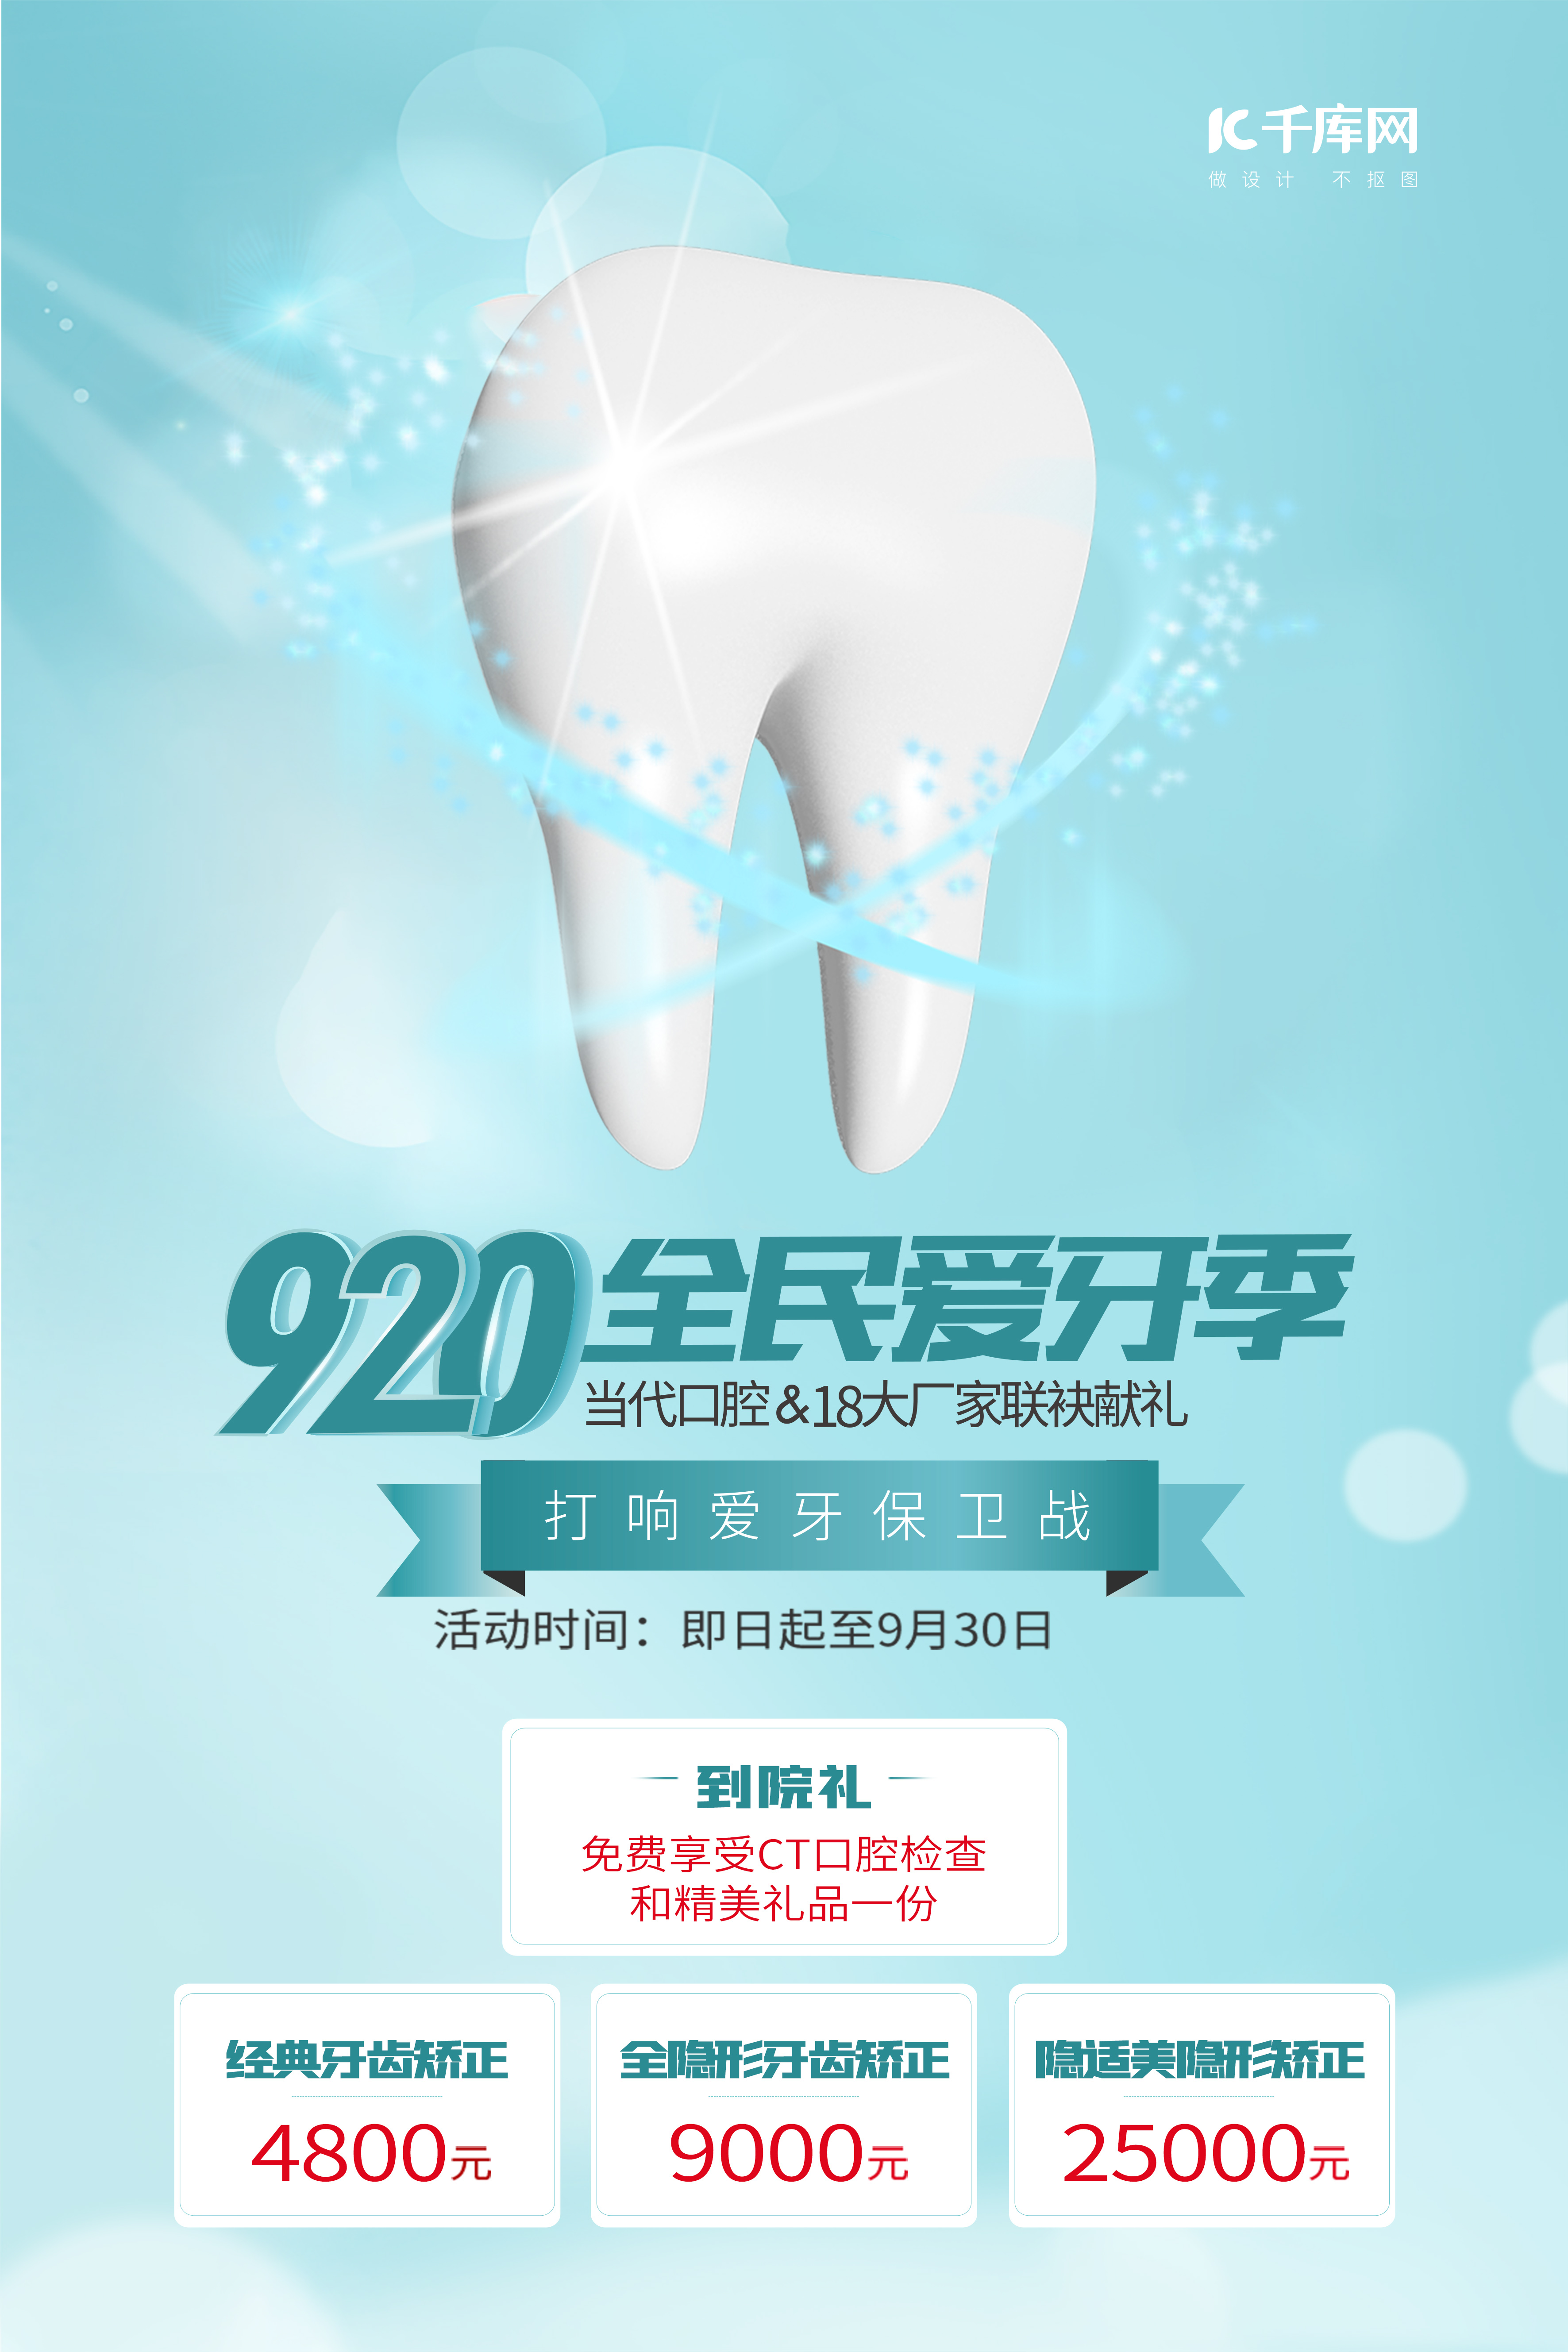 关于开展2019年“9•20全国爱牙日”活动的通知 – 中华口腔医学会